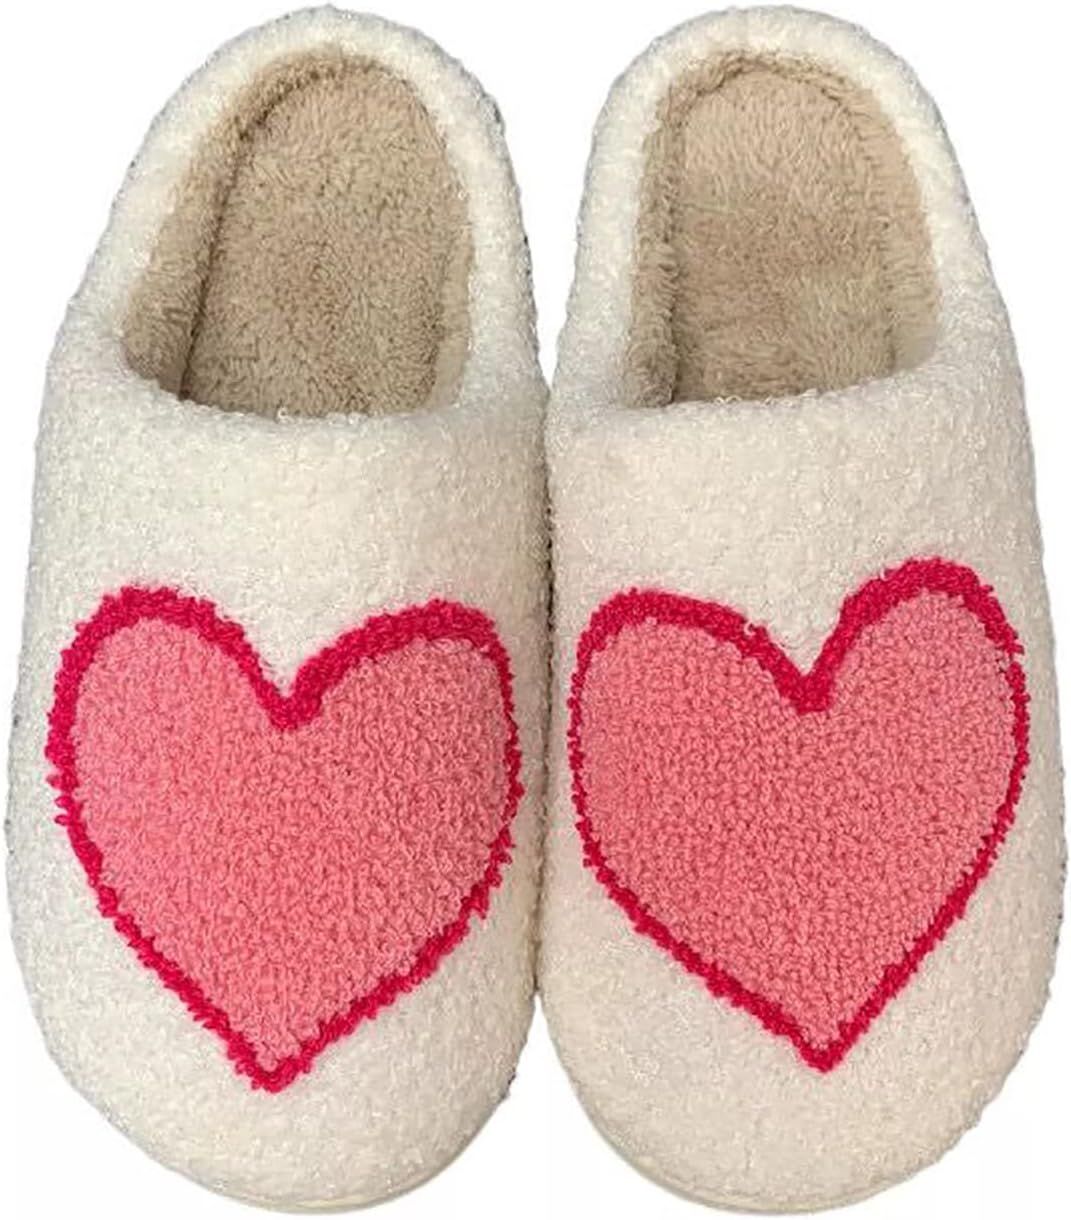 QQGB Women's Men's Cute Fuzzy Heart Slippers Memory Foam Fluffy Couple Slippers Cozy House Slippe... | Amazon (US)